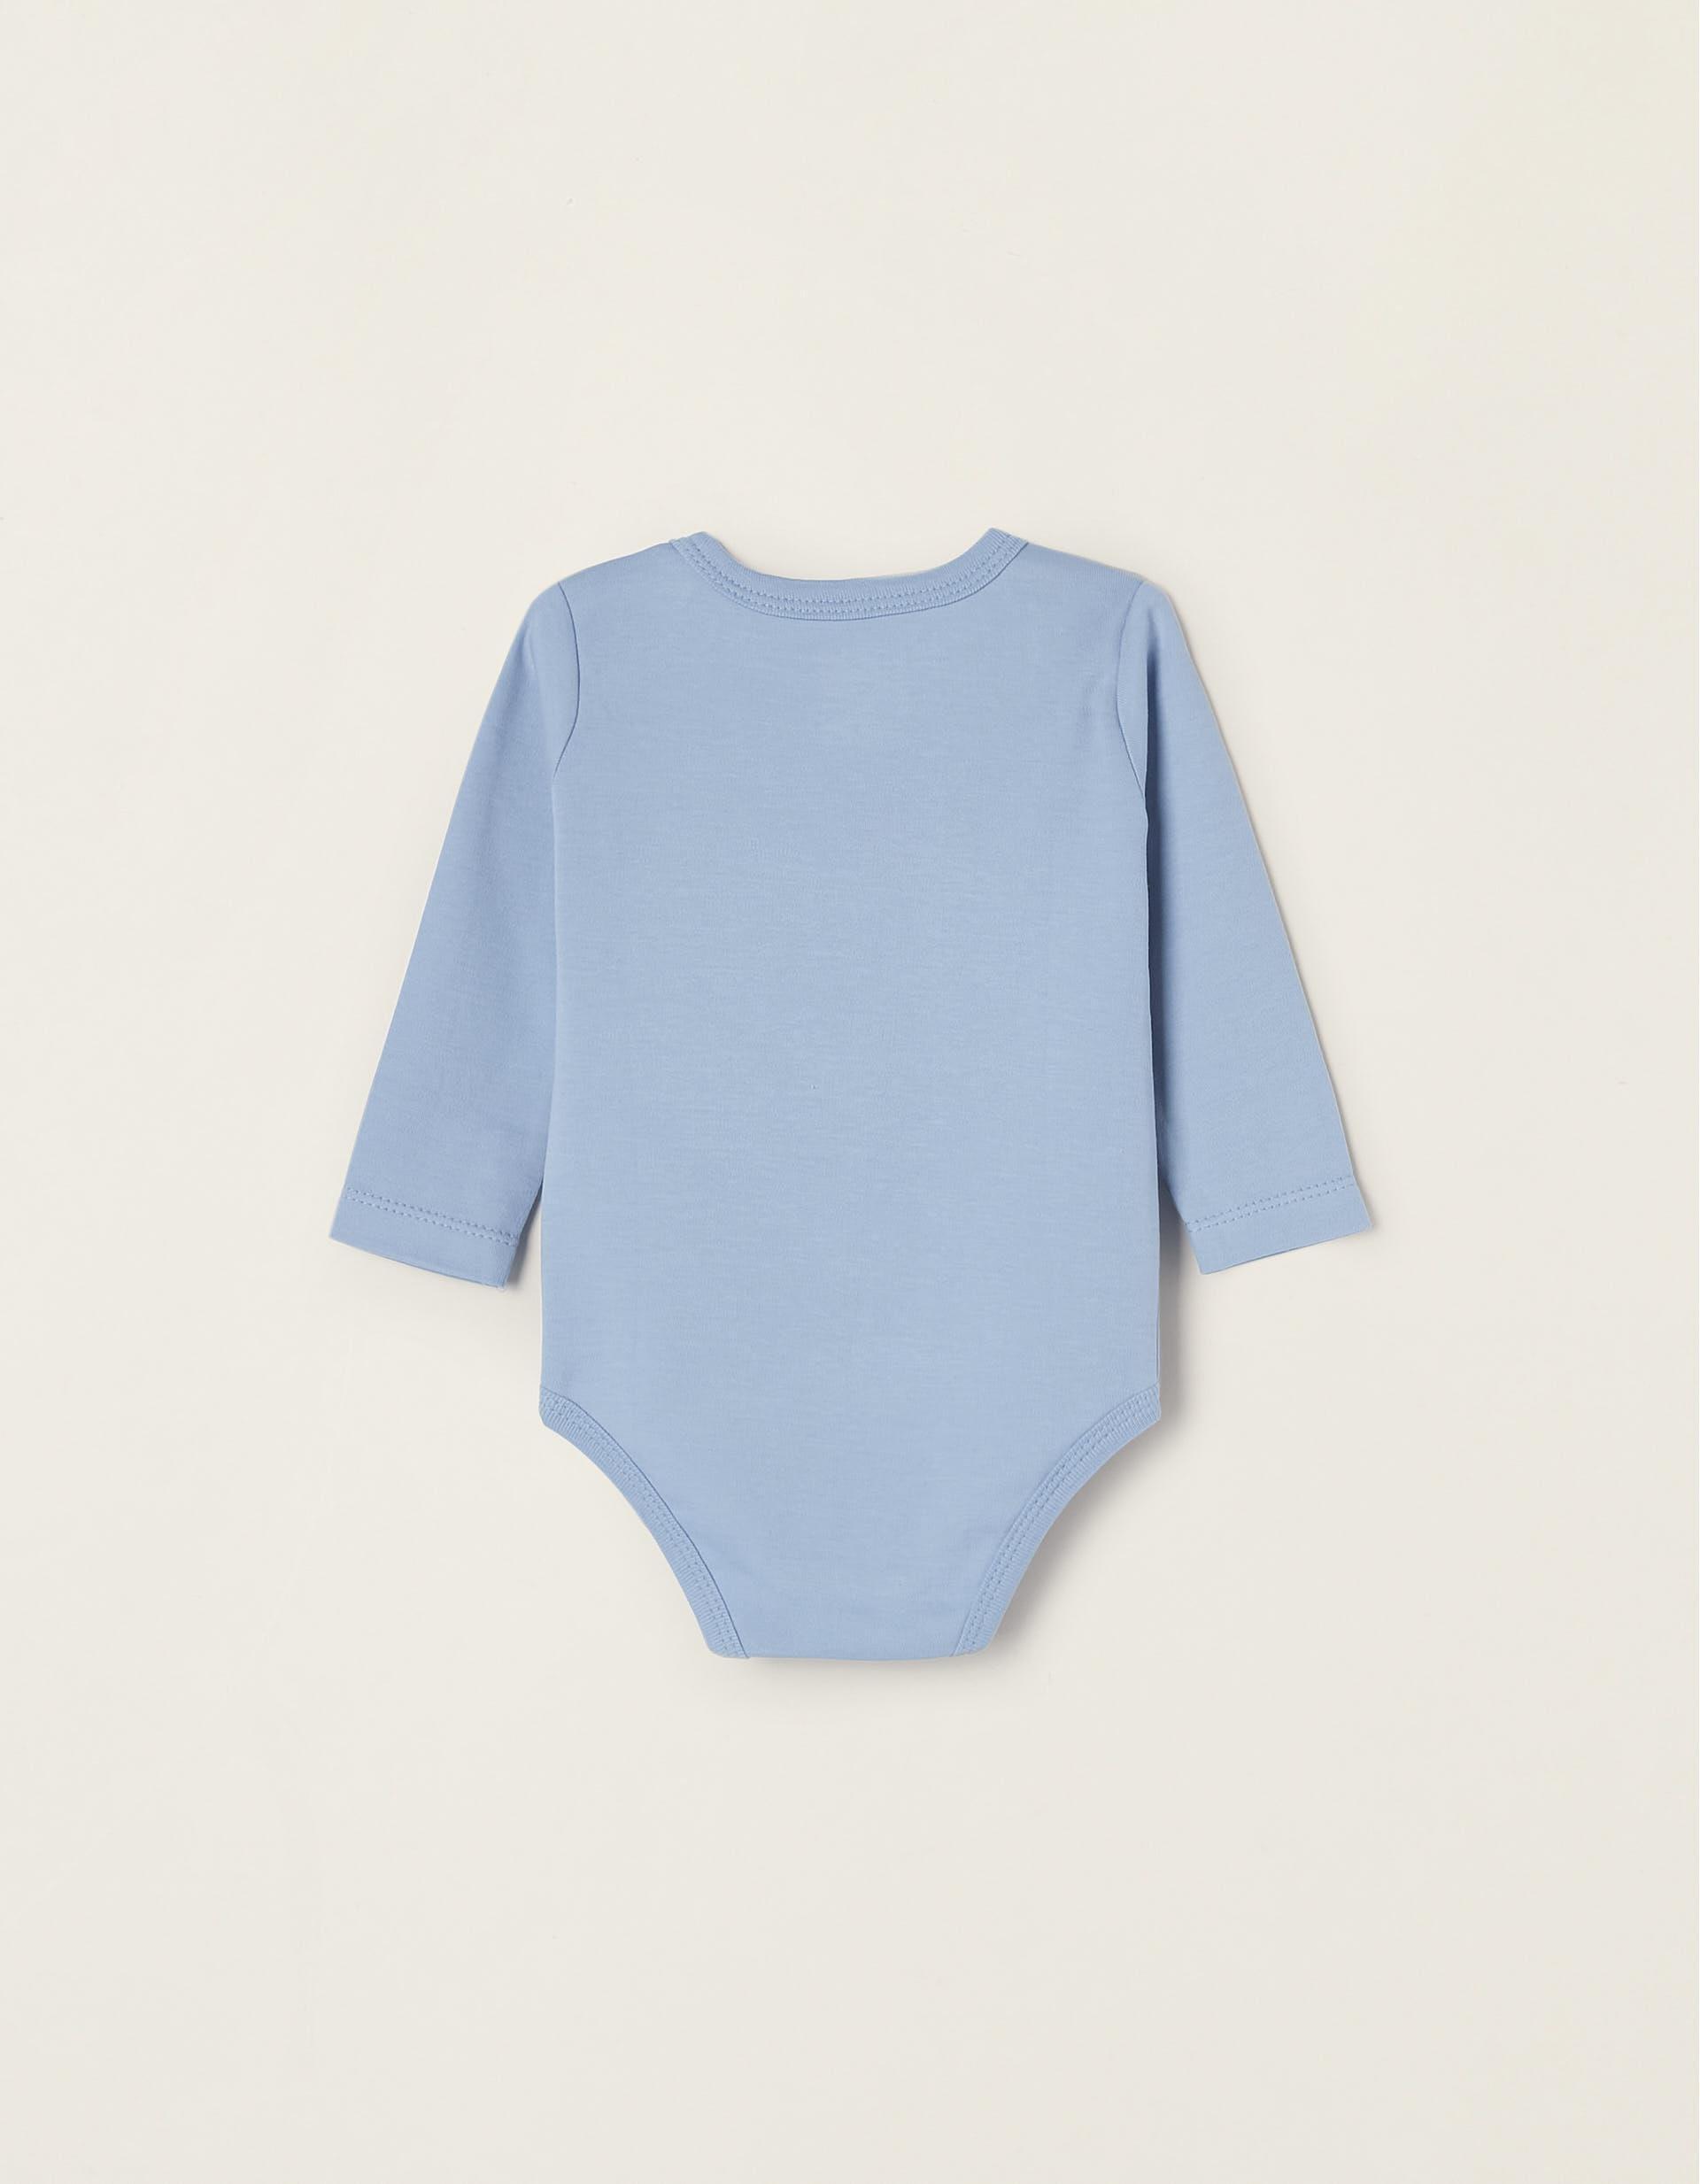 Zippy - Multicolour Cotton Bodysuits - Set Of 5, Baby Unisex